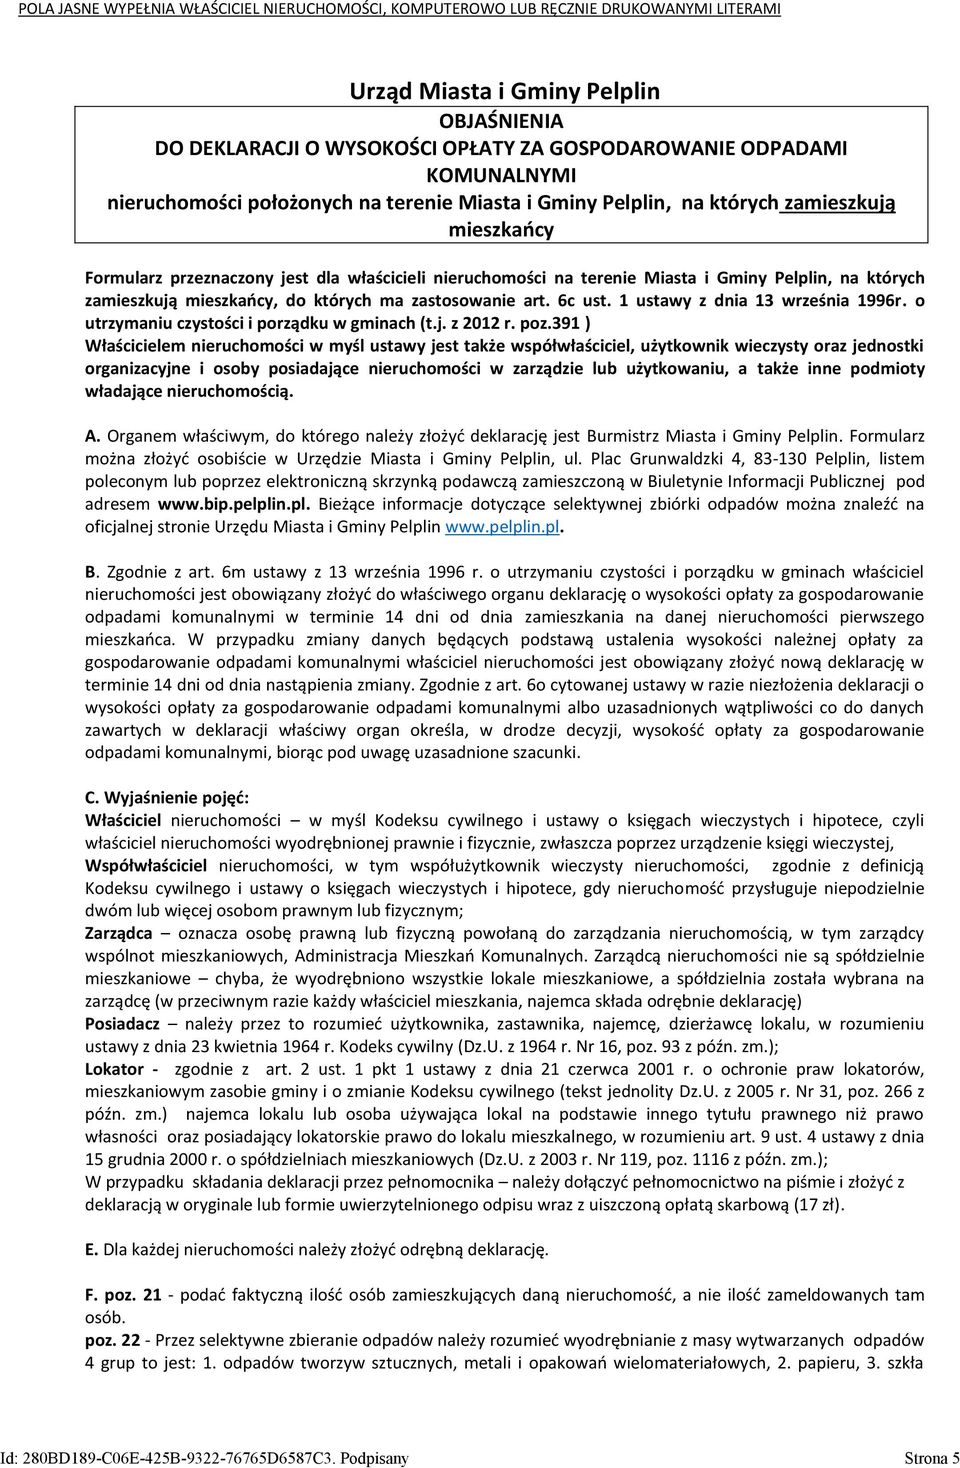 1 ustawy z dnia 13 września 1996r. o utrzymaniu czystości i porządku w gminach (t.j. z 2012 r. poz.